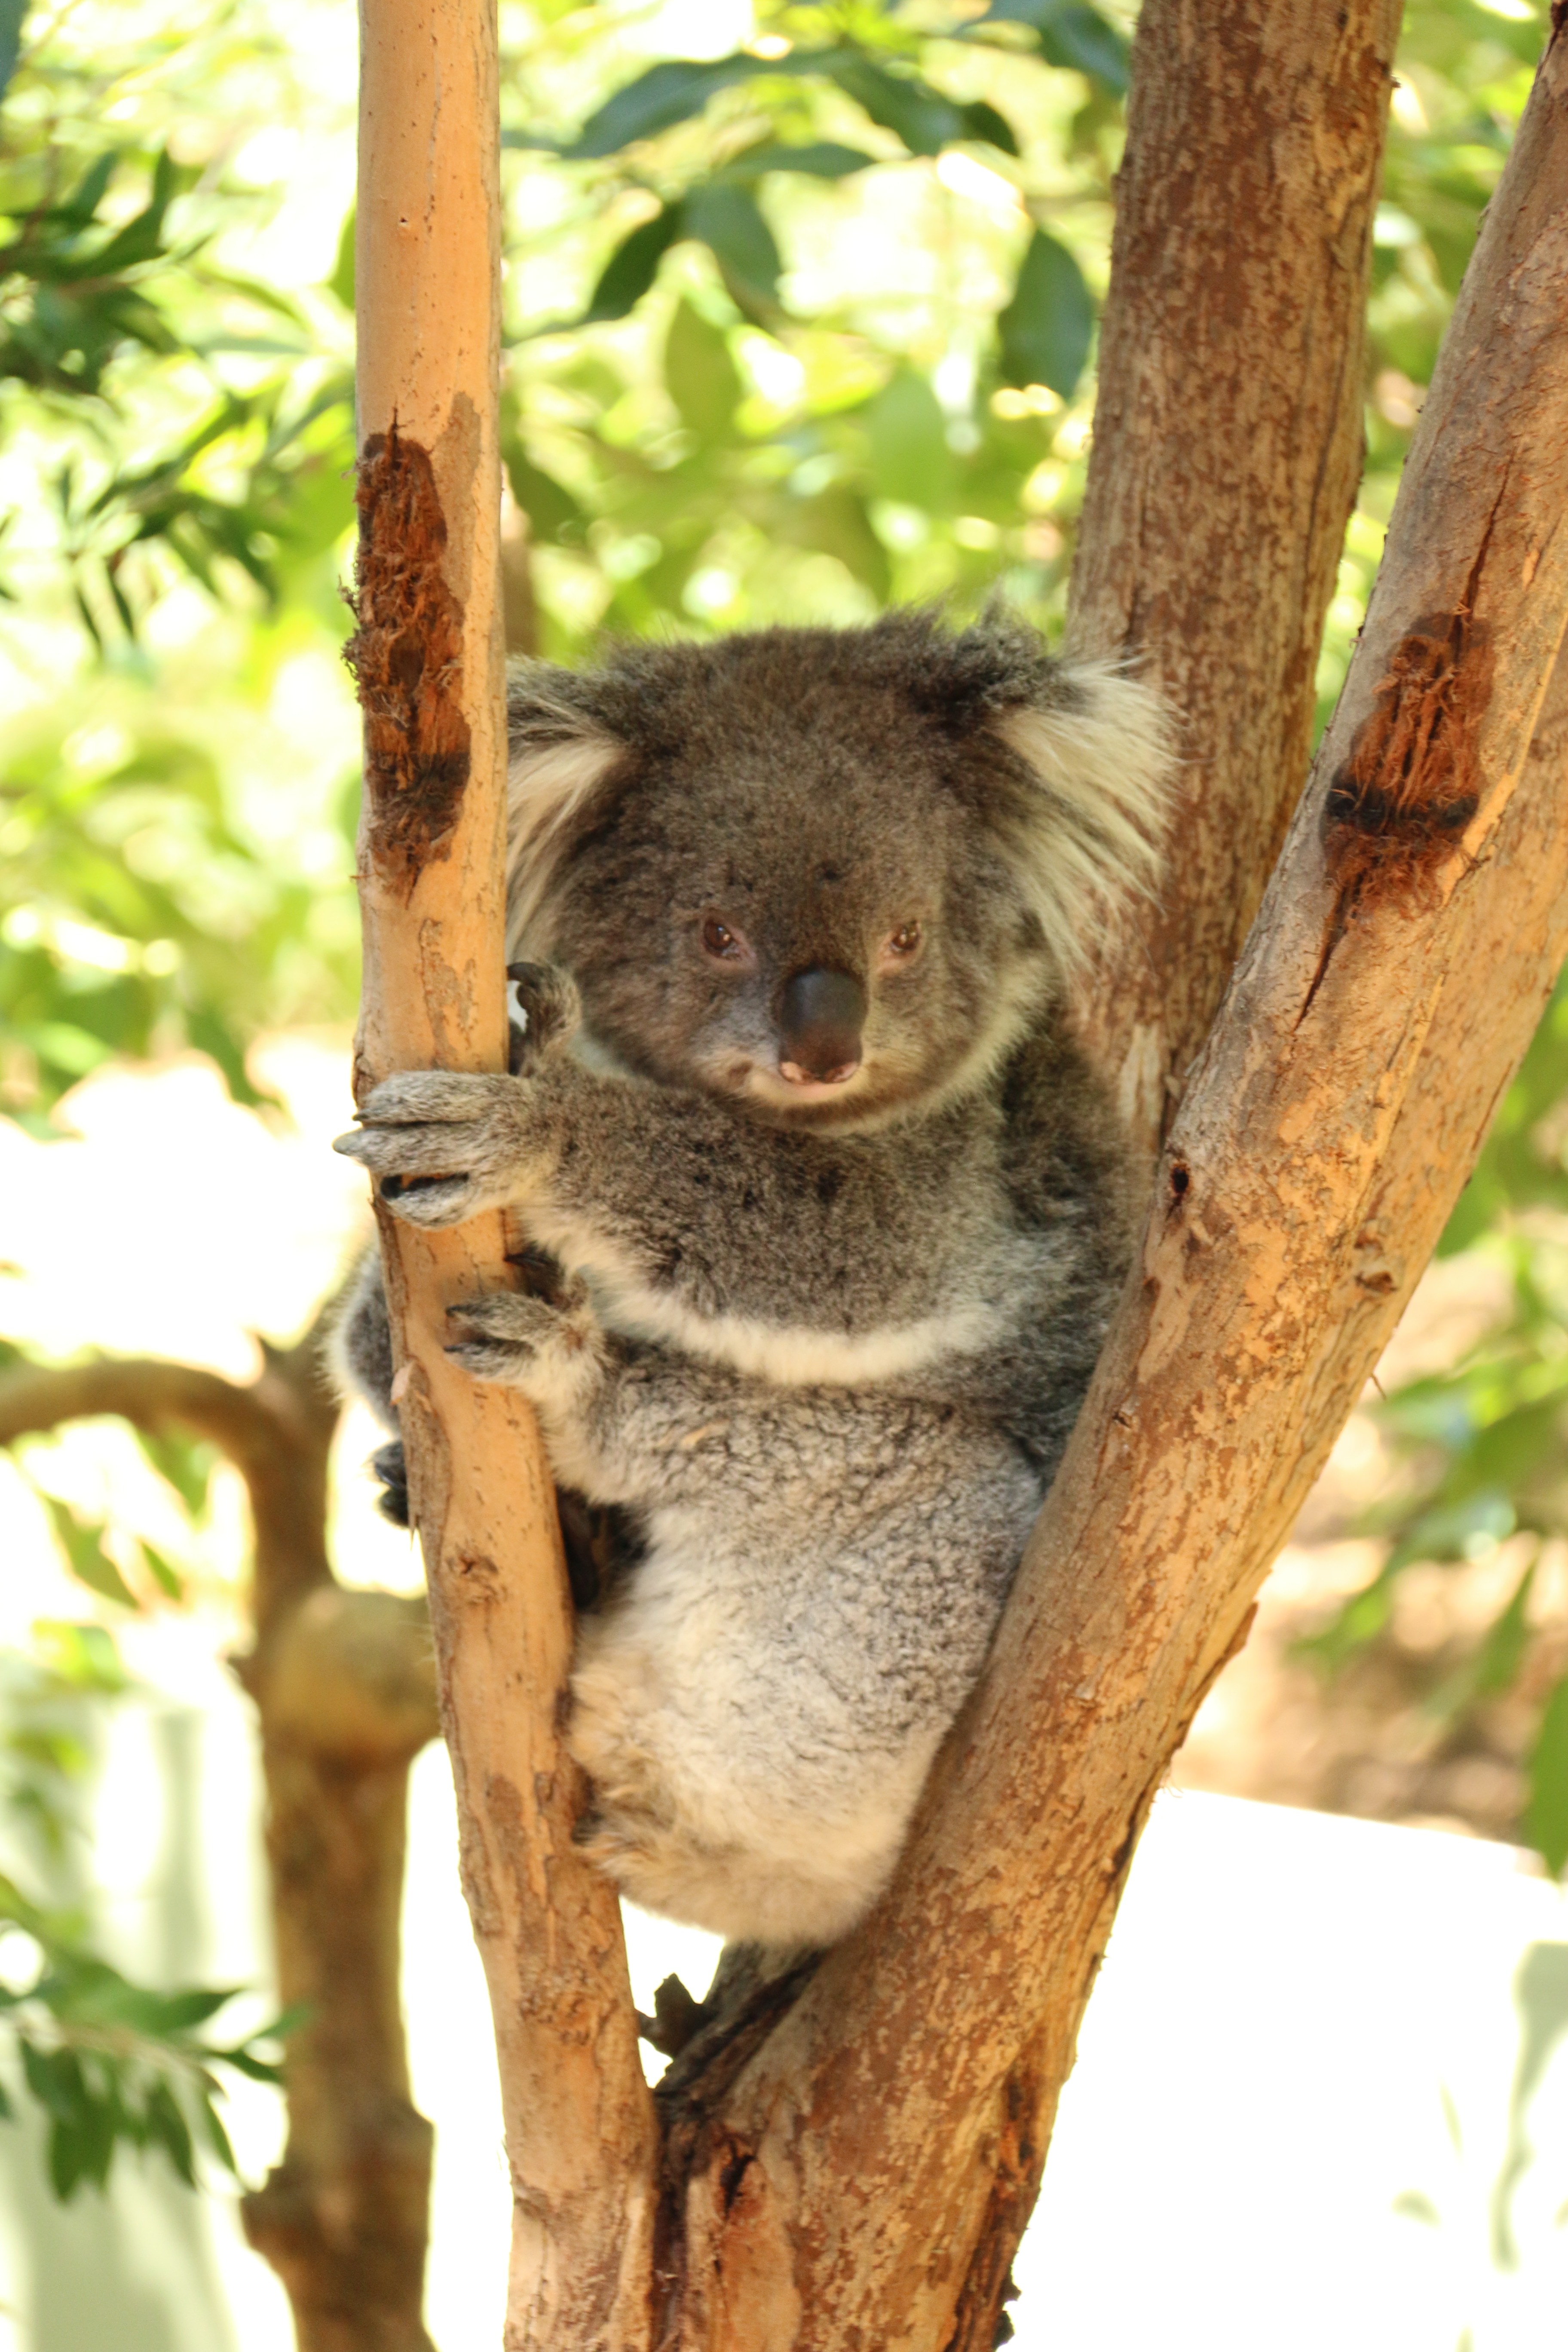 Koala bear holding on brown tree branch at daytime